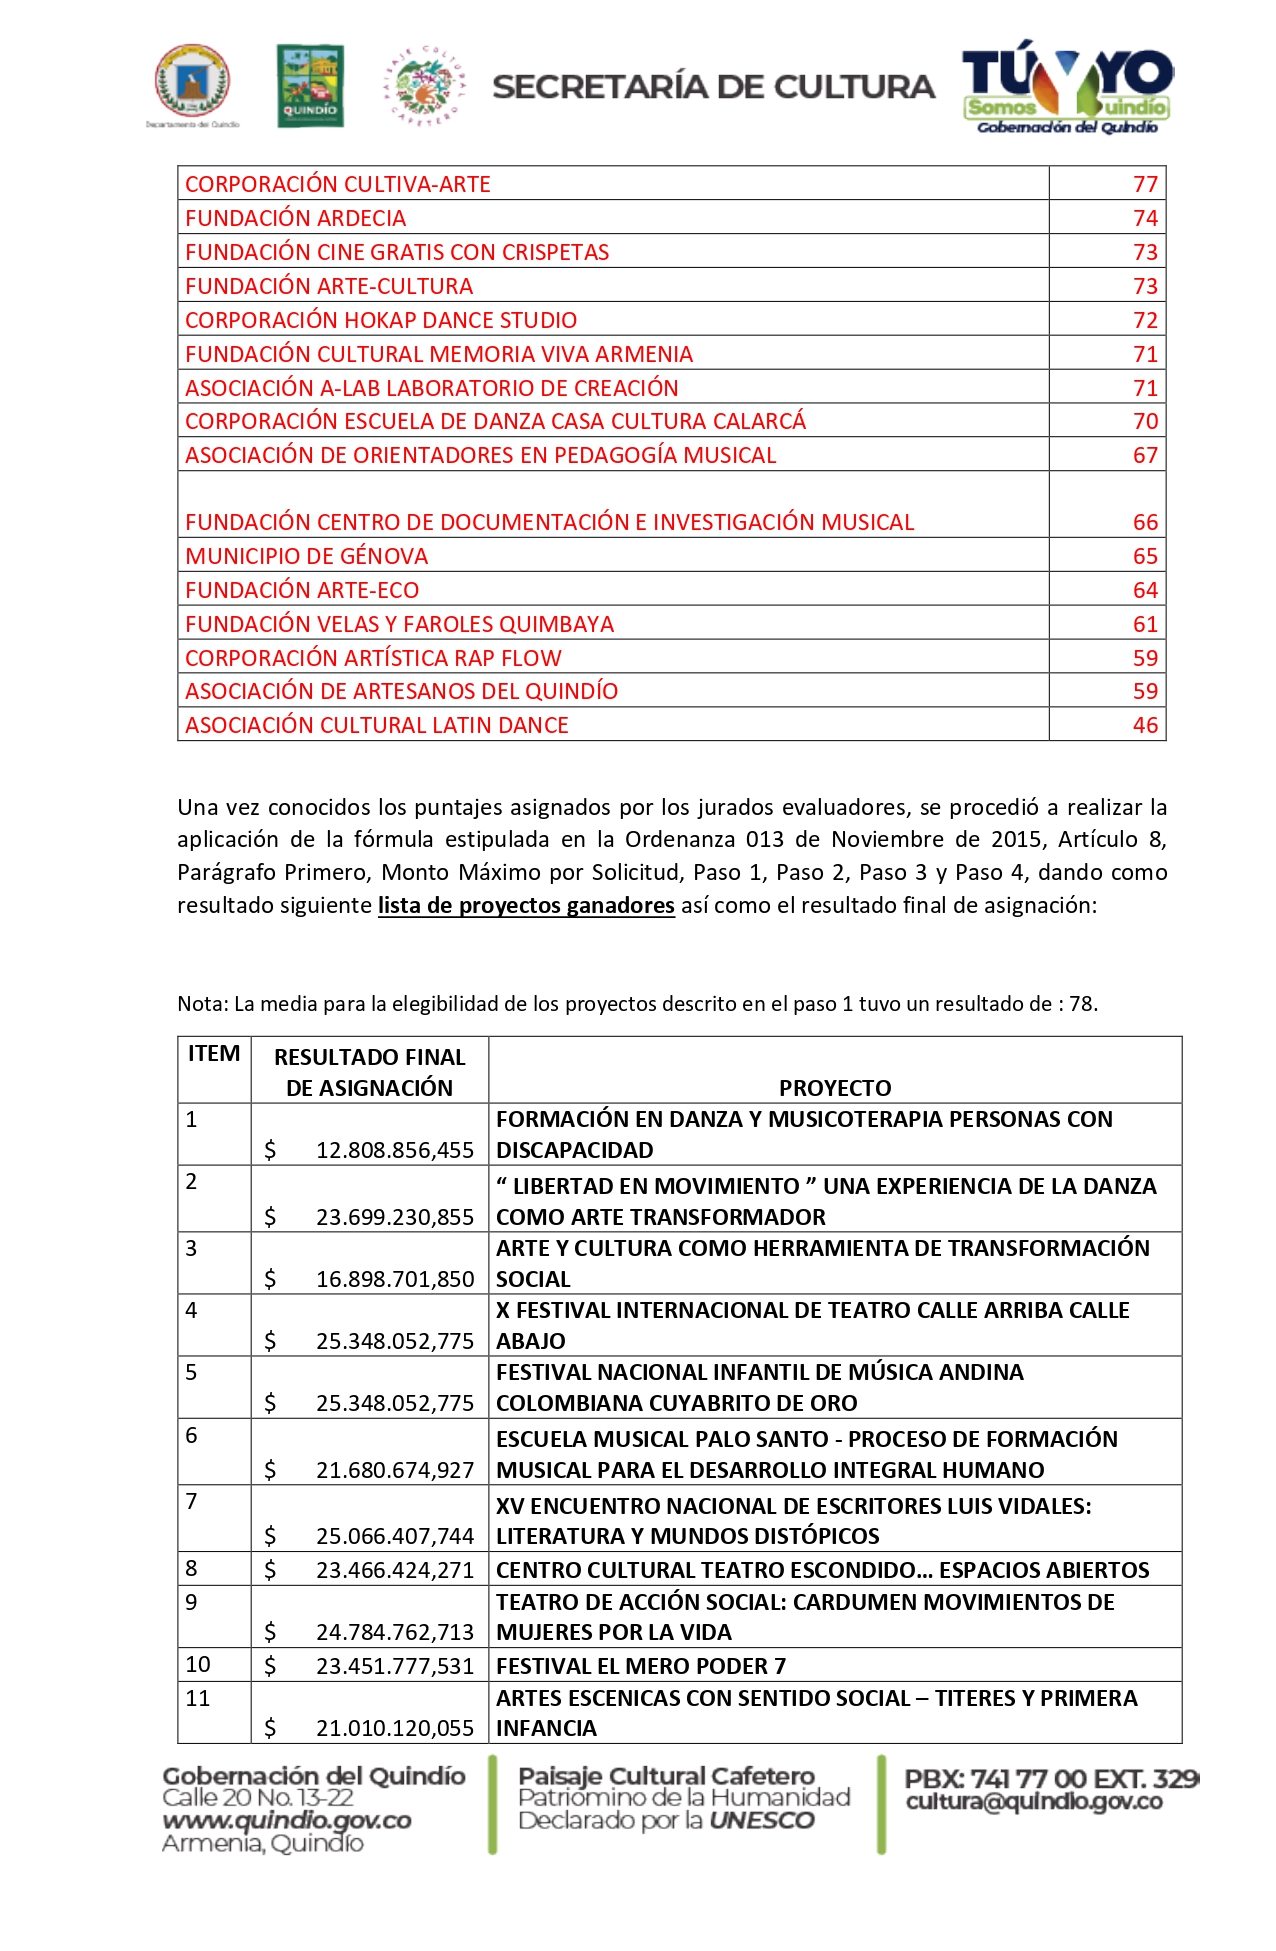 LISTADO_DE_PERSONAS_NATURALES_GANADORAS_CONSERTACIÓN_2022_pages-to-jpg-0002.jpg - 1,005.52 kB